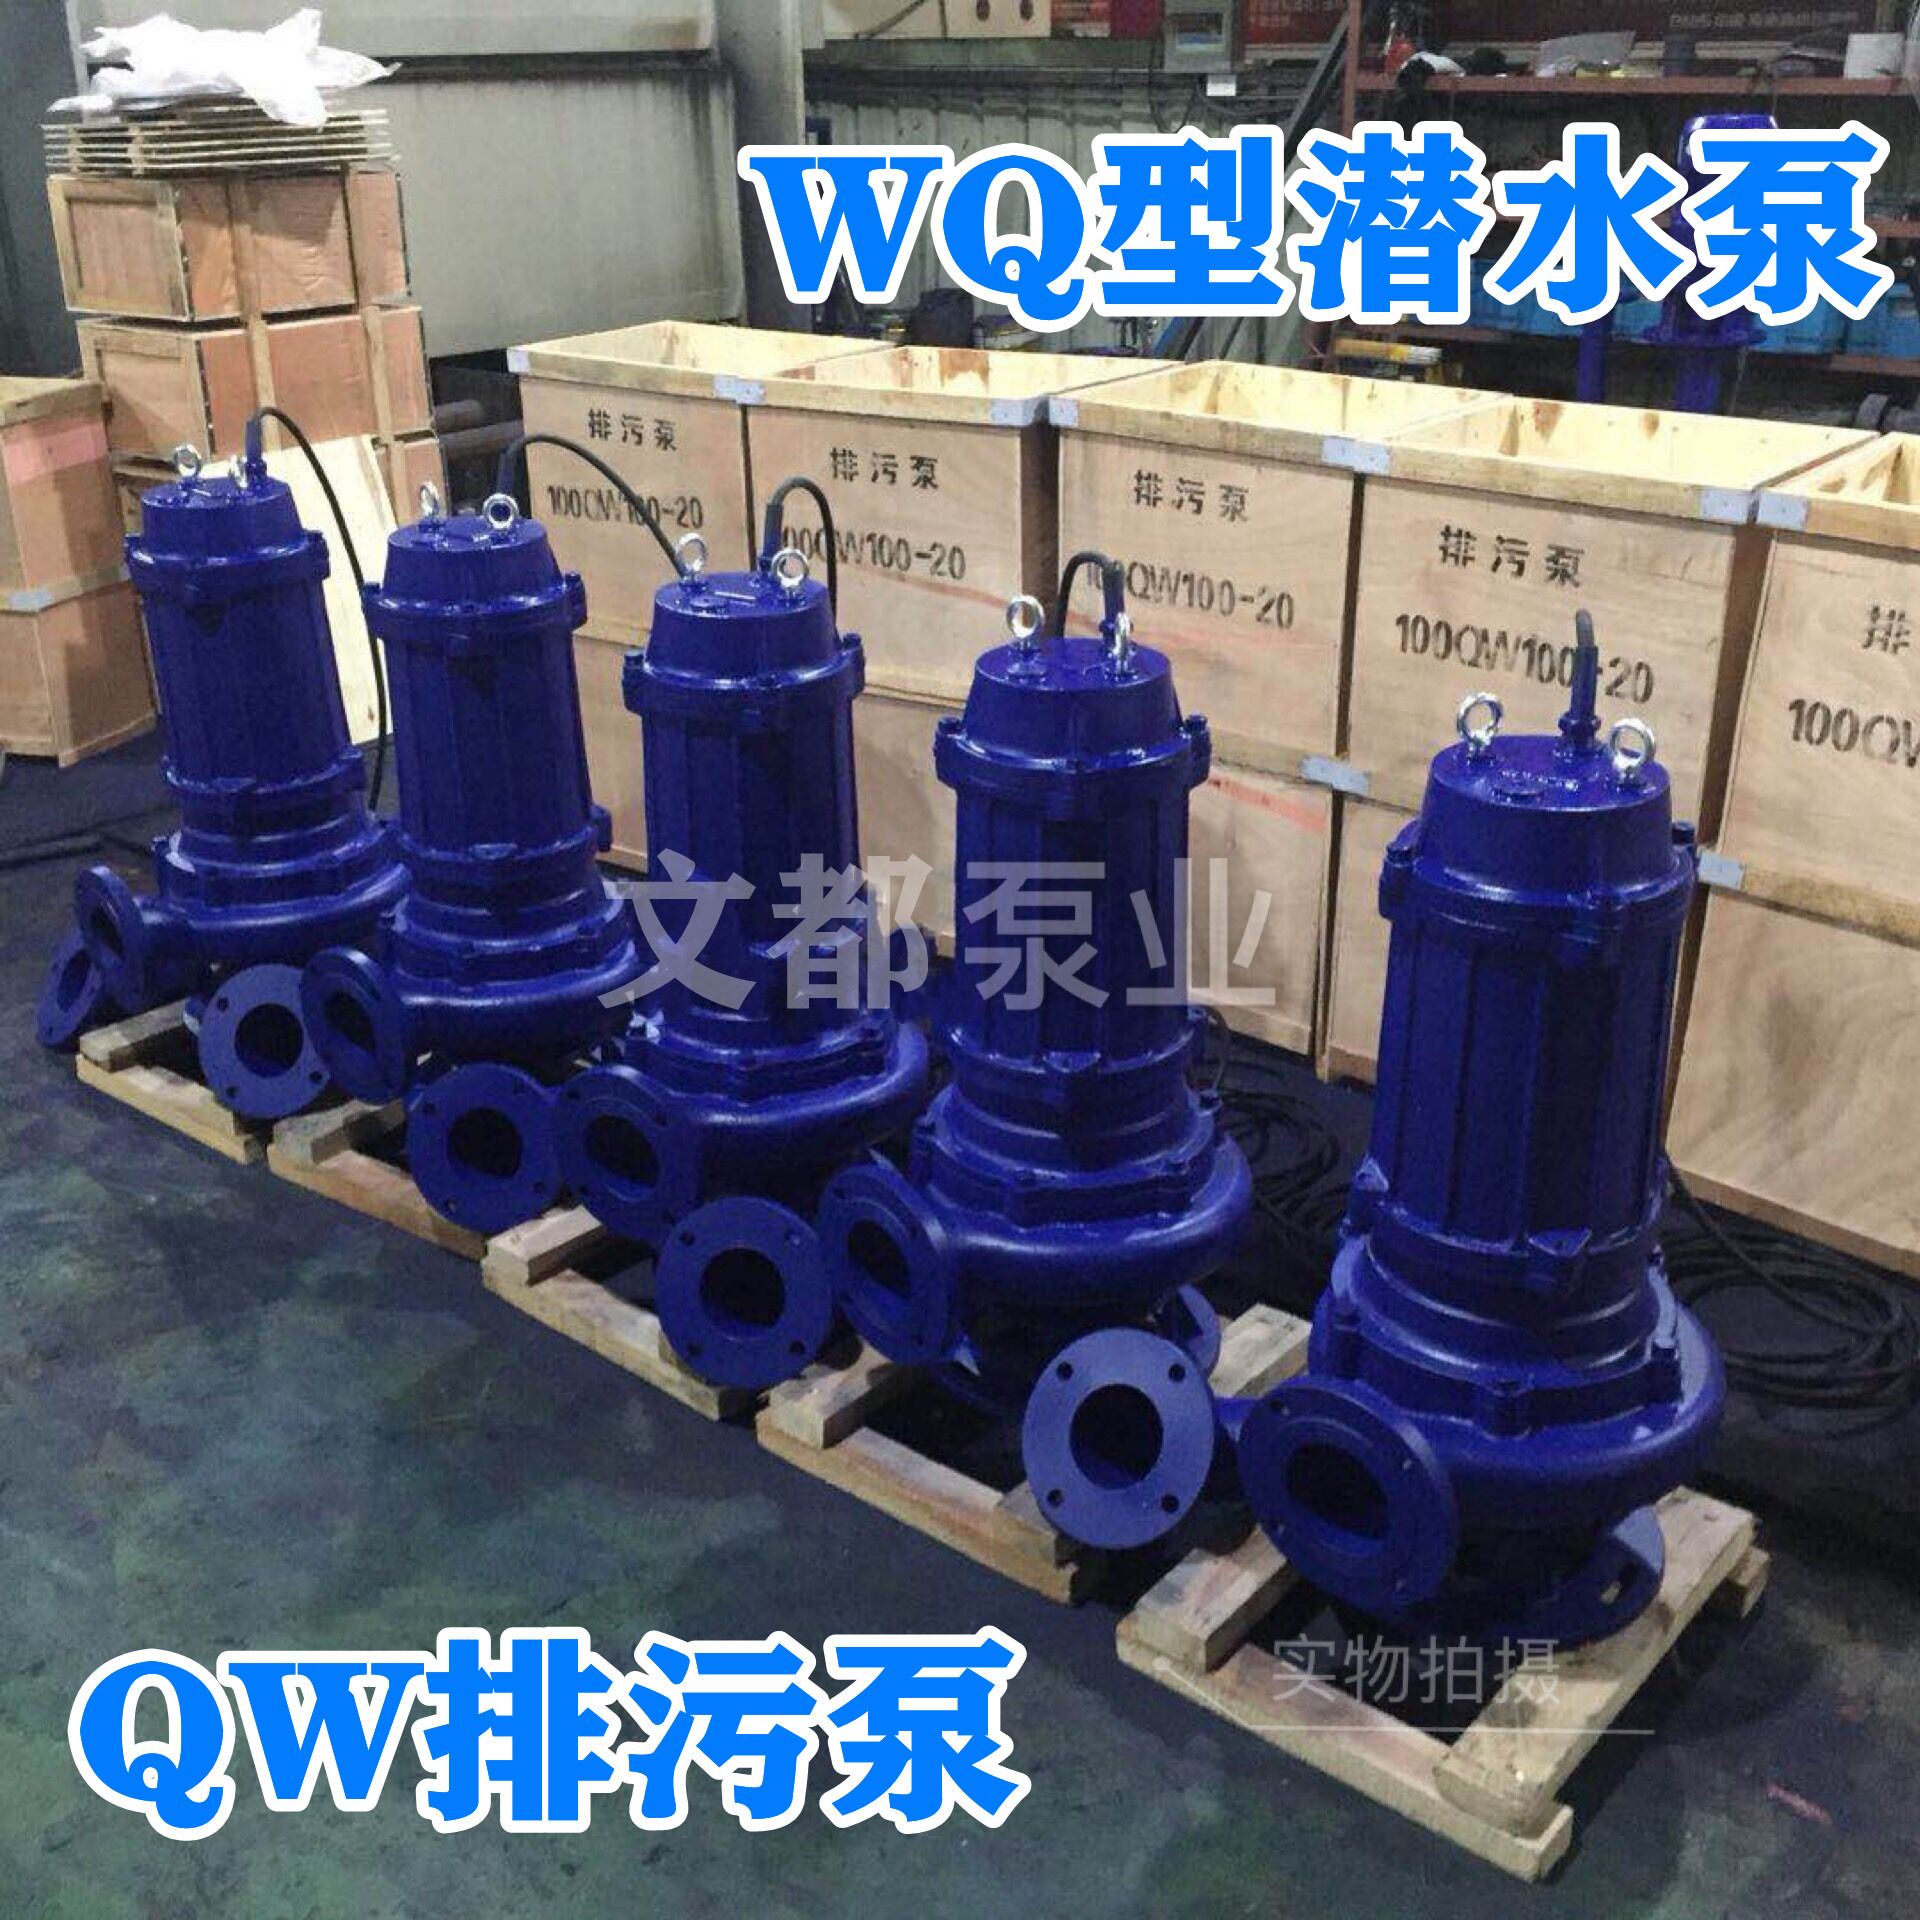 厂家直销50WQ18-30-3kw无堵塞排污水泵 水泵、污水处理水泵、